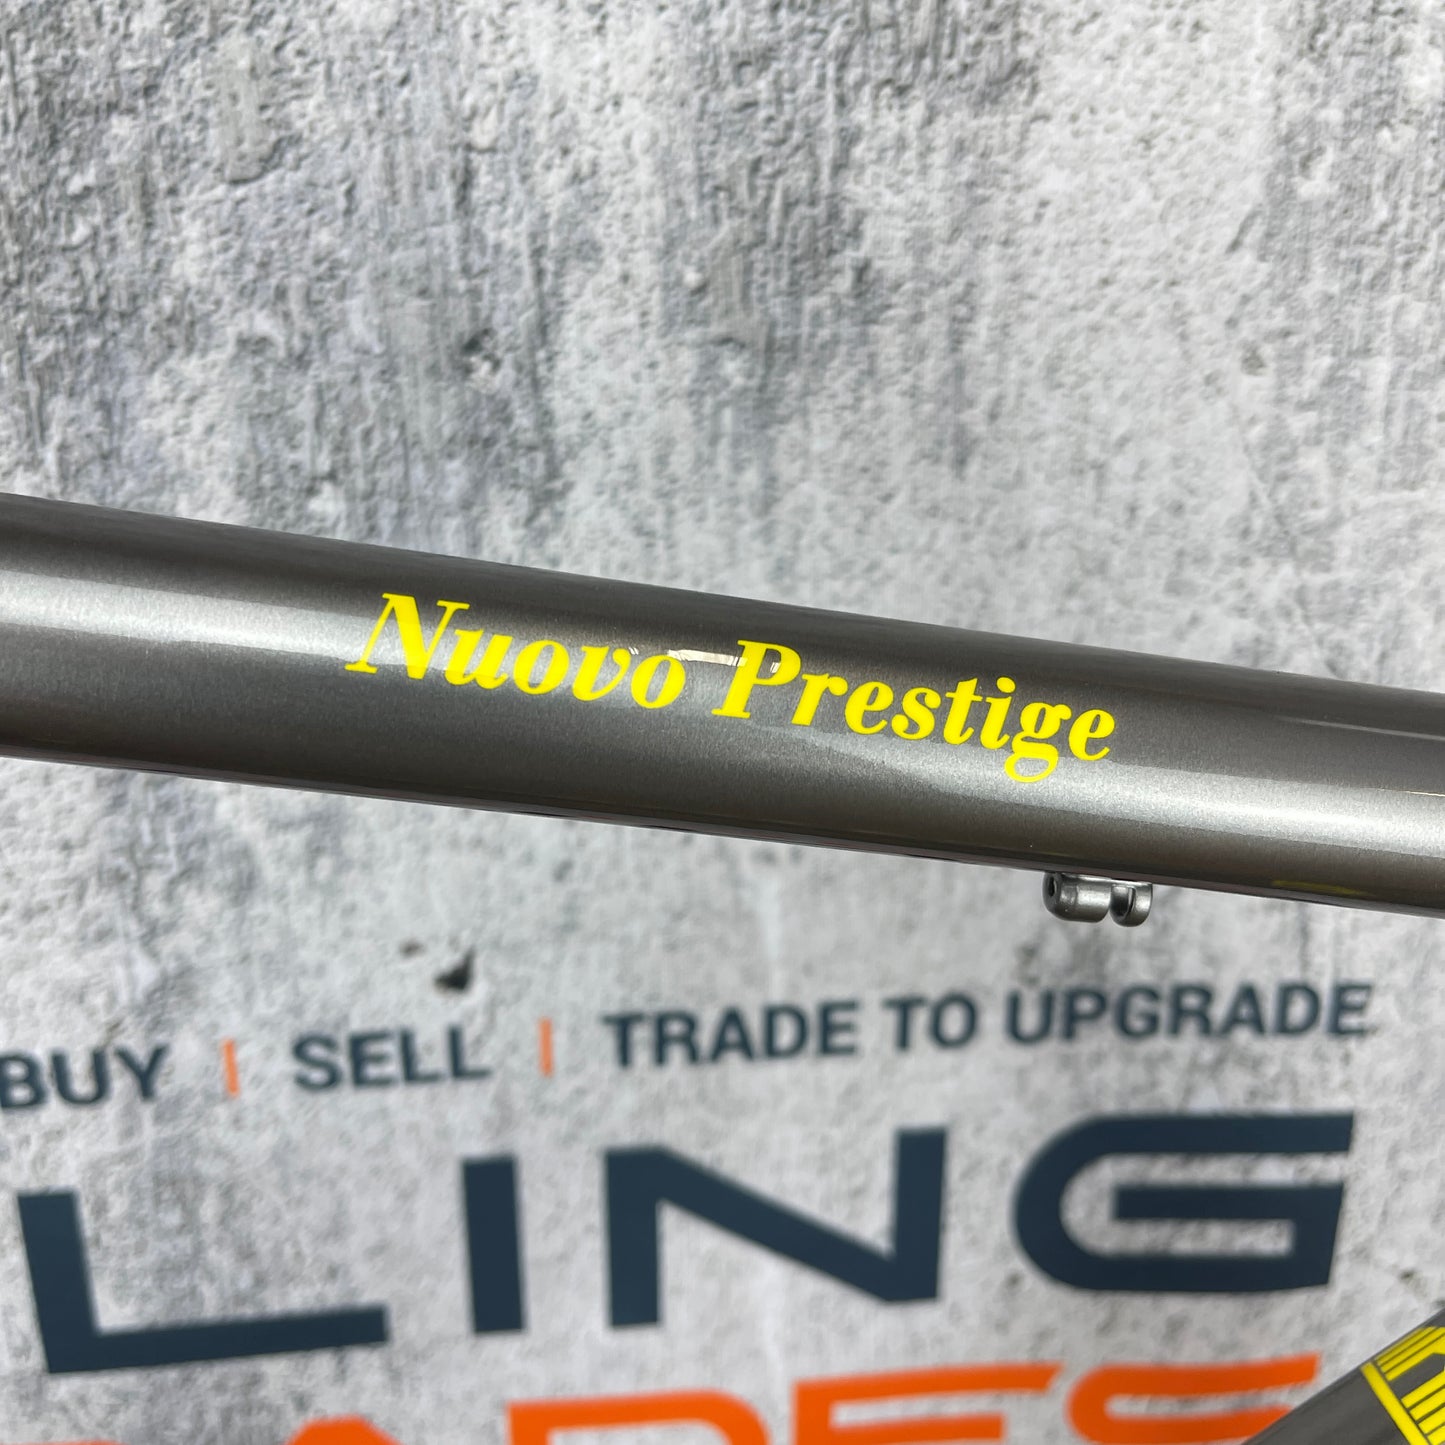 New Teardown! Alberto Masi Nuovo Prestige 55cm Rim Brake Steel Frameset 700c